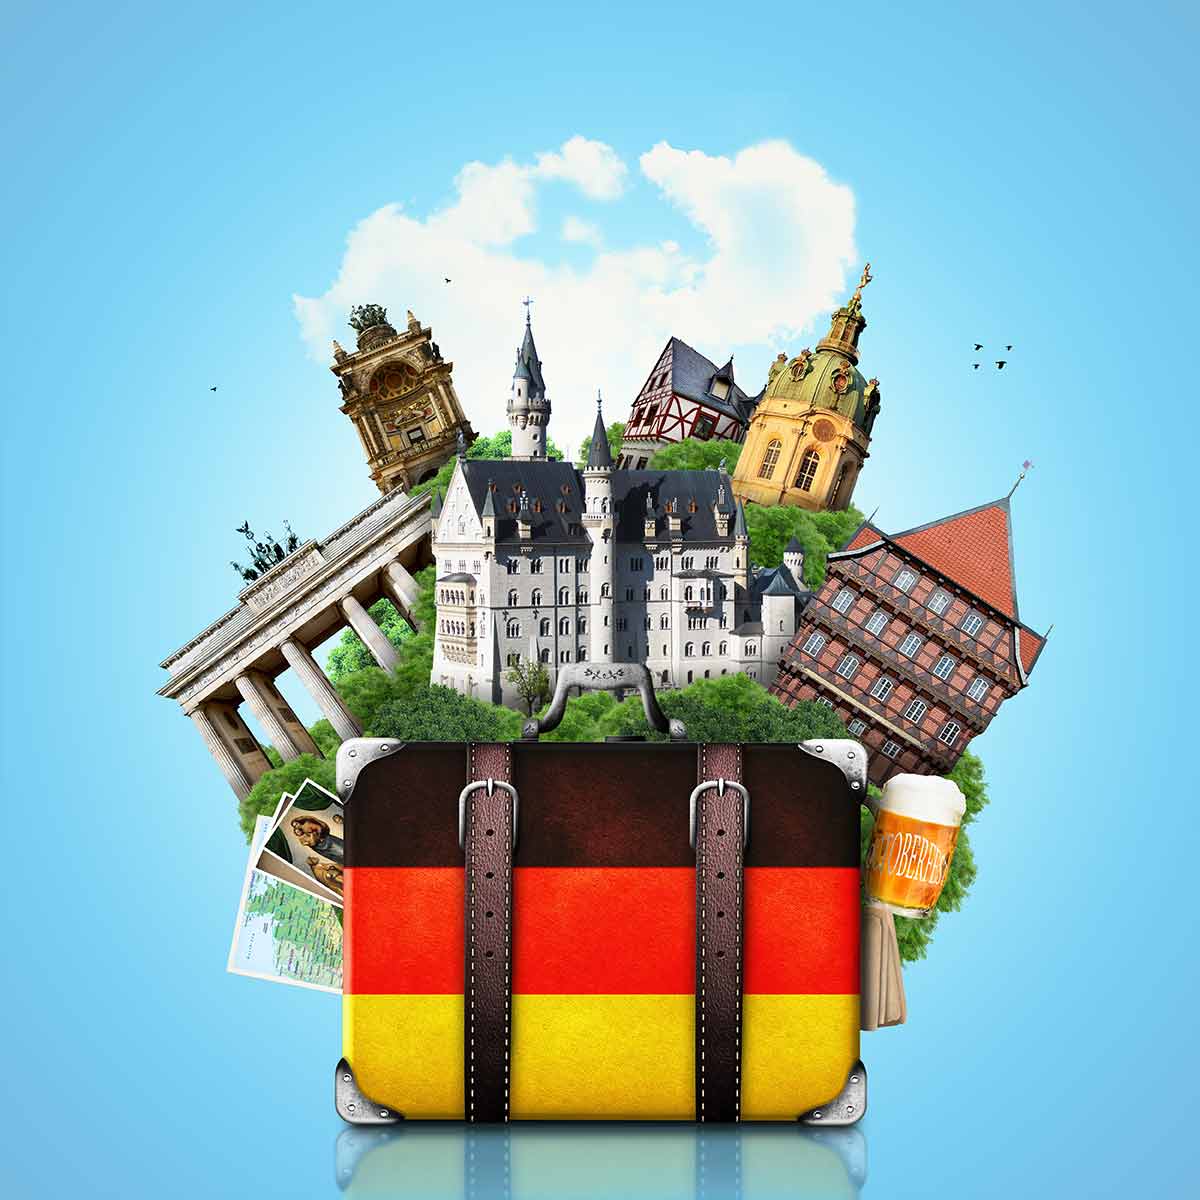 8 Tempat Terbaik di Jerman Untuk di Kunjungi (Part 2)